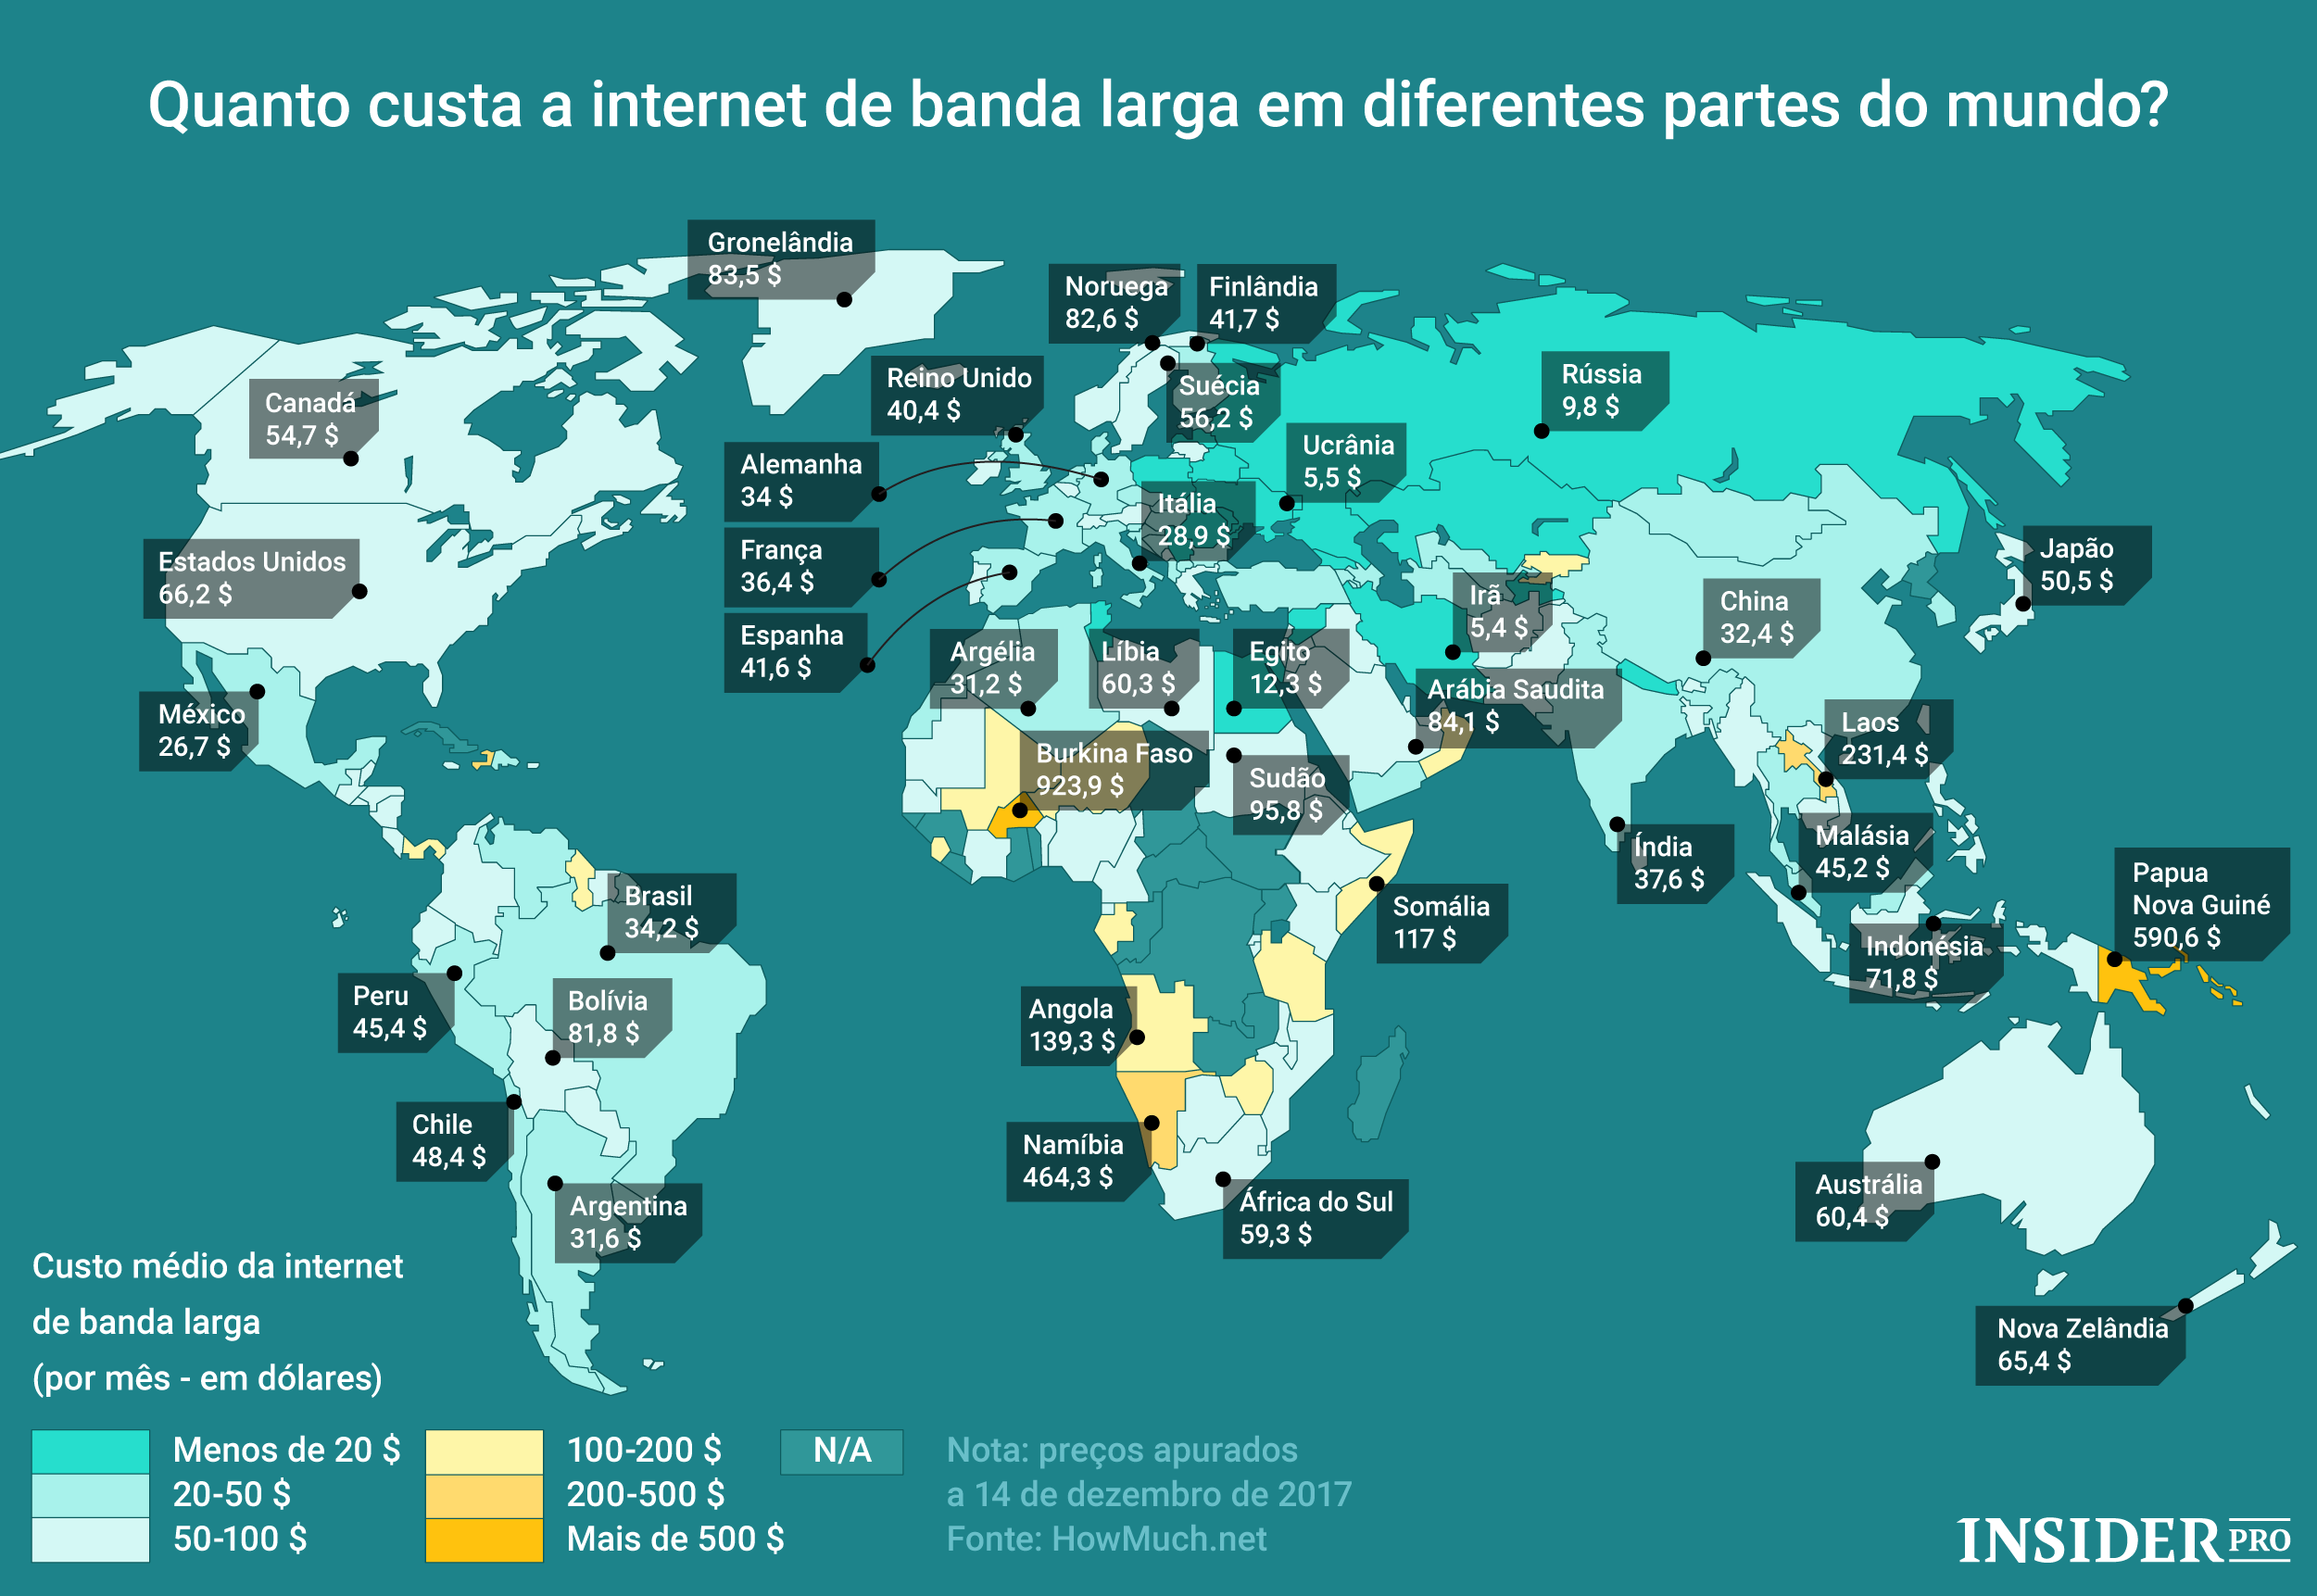 Доступ в другие страны. Доступность интернета в мире. Интернет в разных странах. Интернет в других странах. Стоимость интернета в мире.